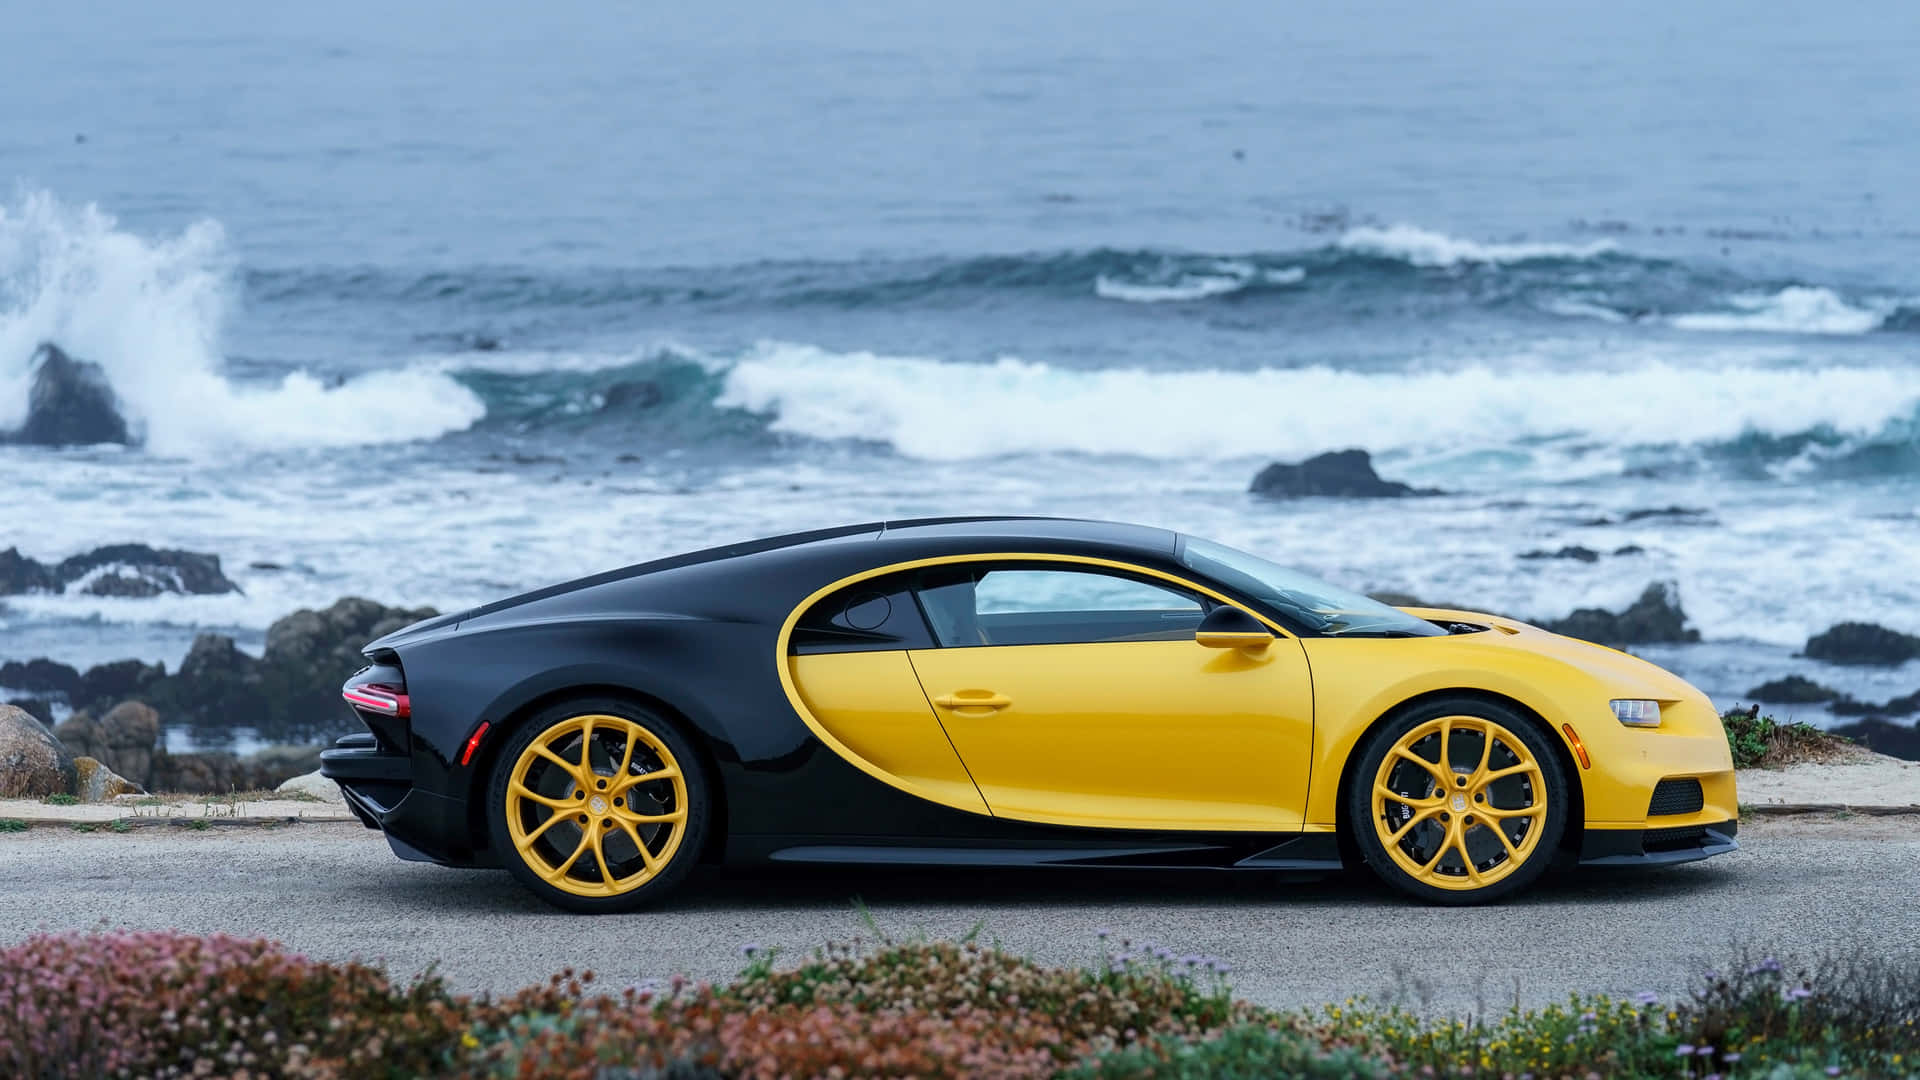 Luxoem Movimento - Permita-se O Poder E A Beleza Do Bugatti 4k Como Papel De Parede Em Seu Computador Ou Celular. Papel de Parede